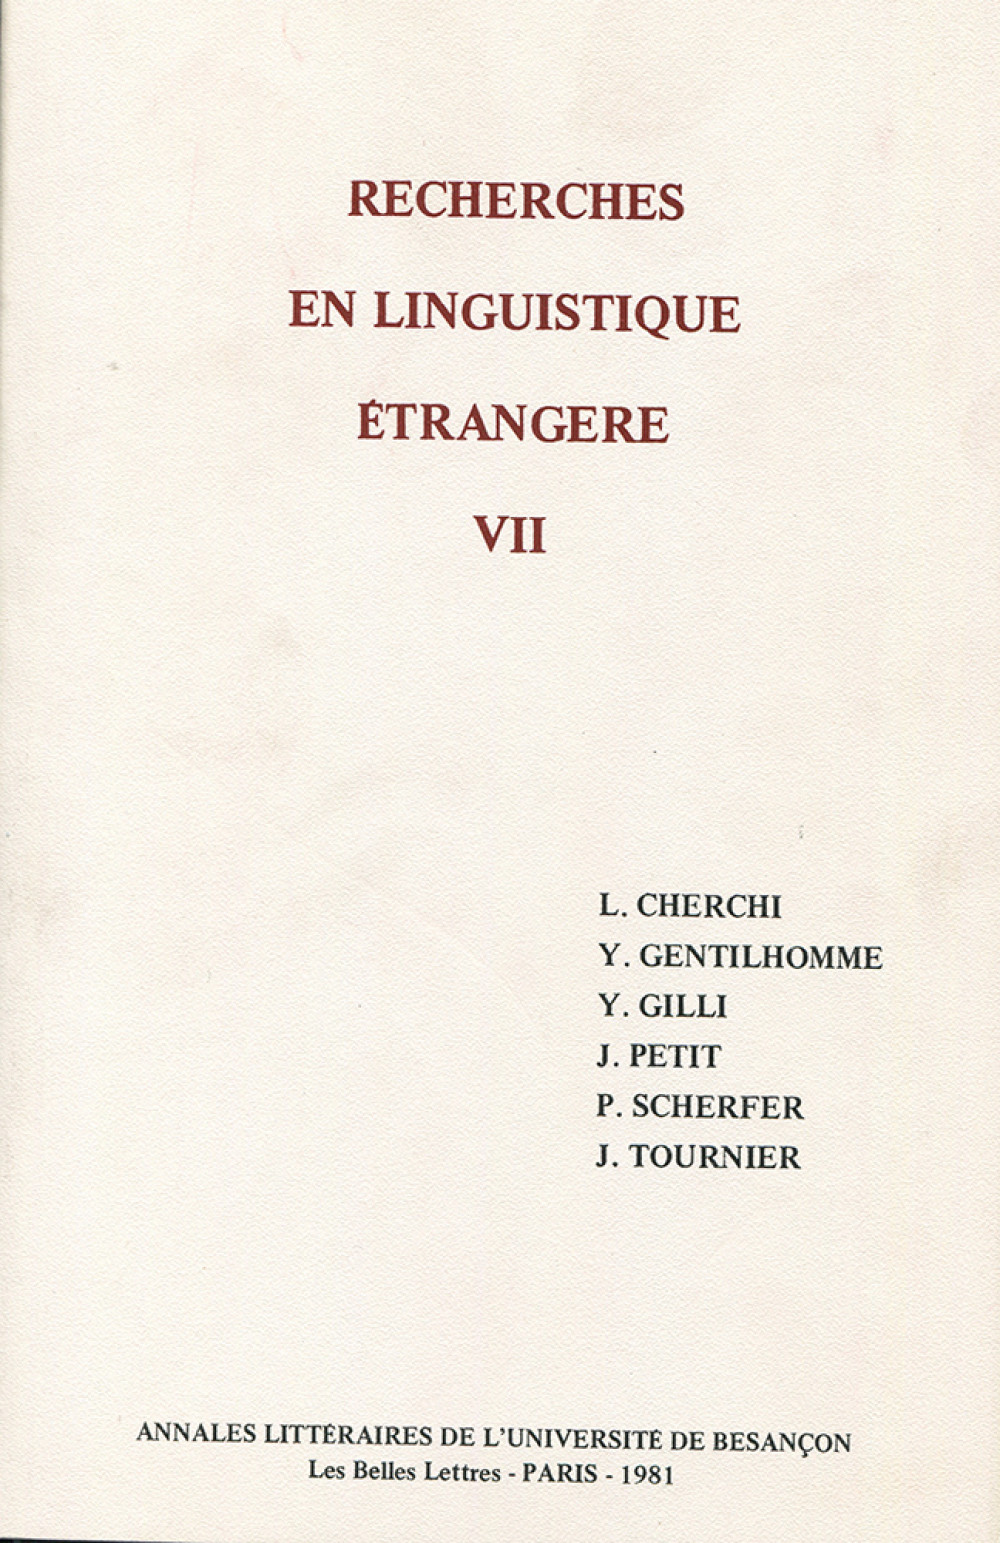 Recherches en linguistique étrangère VII